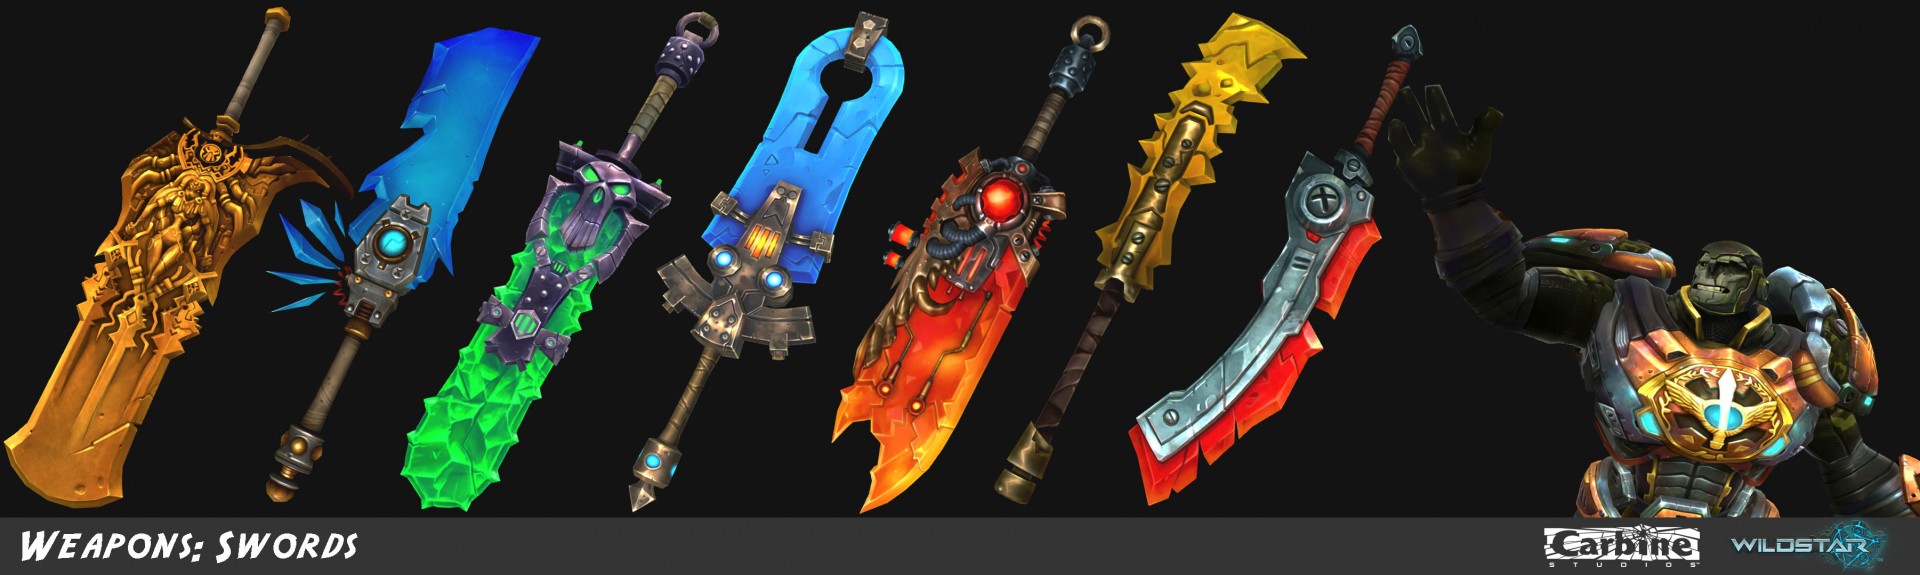 Wildstar swords